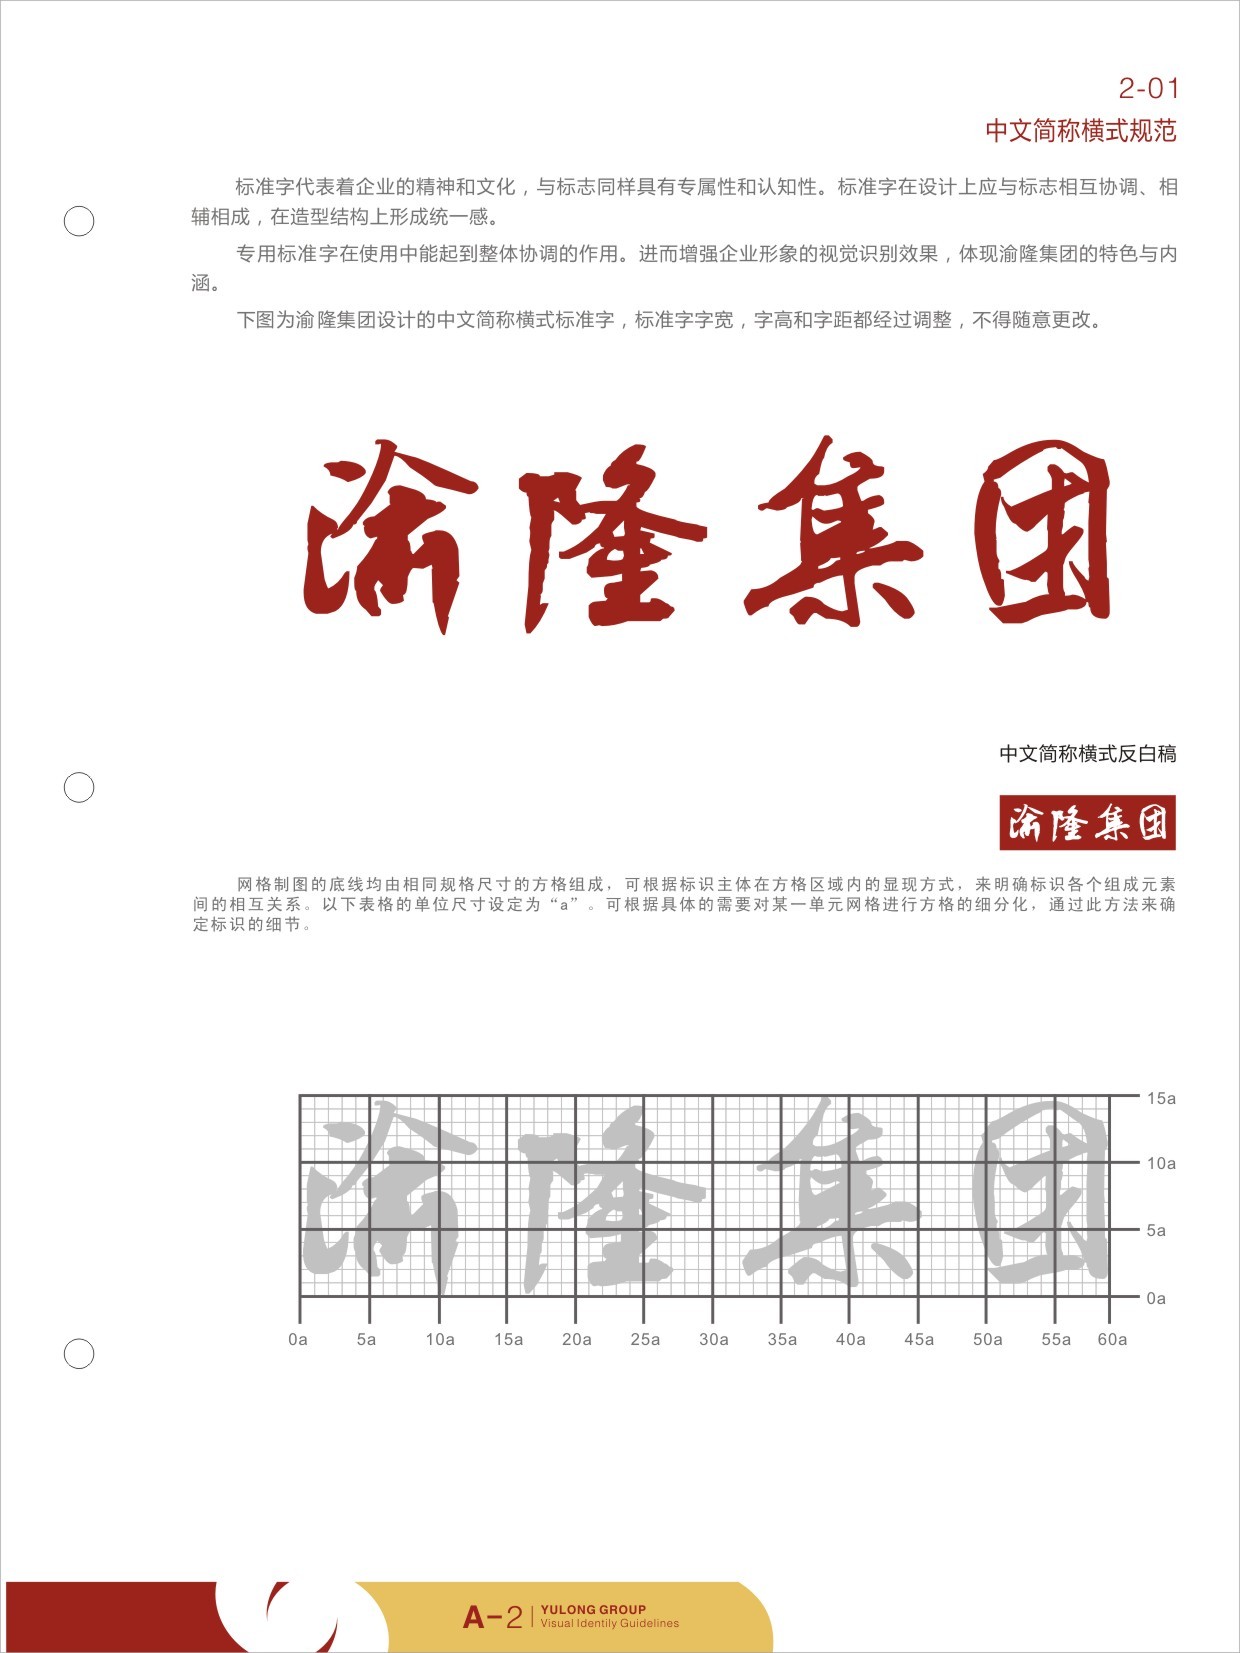 渝隆集团logo/VI视觉识别设计图4